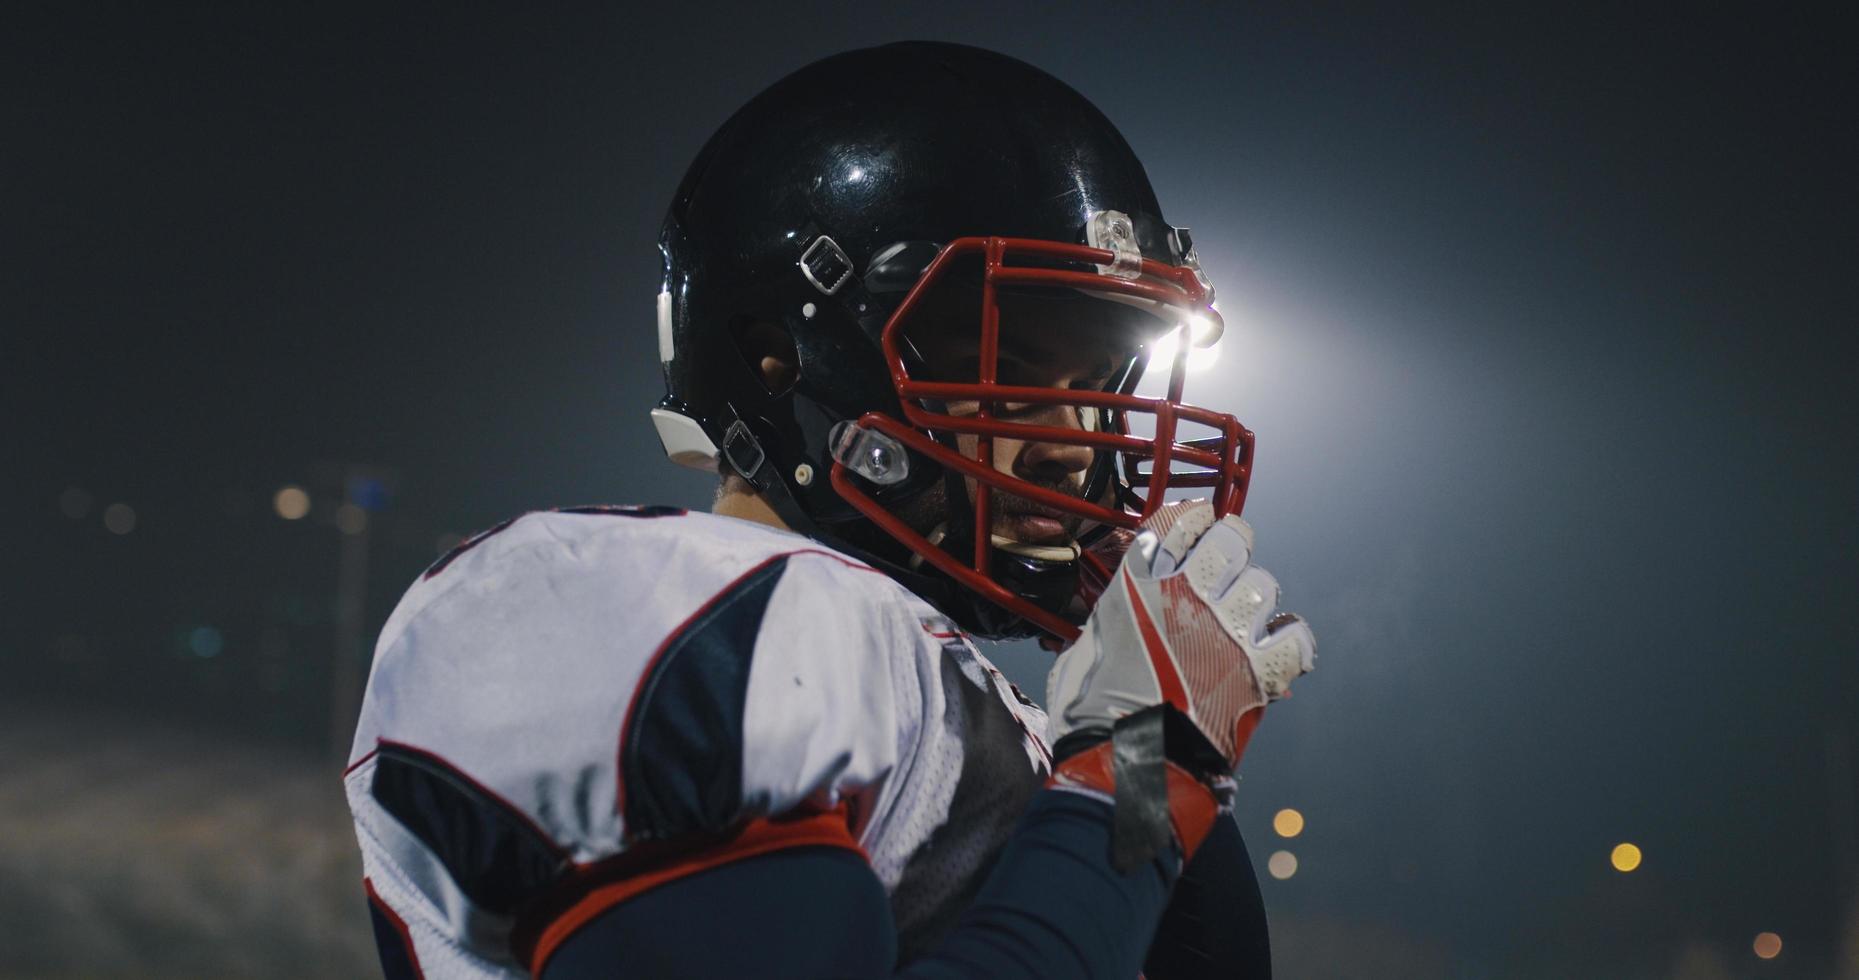 American-Football-Spieler, der einen Helm auf einem großen Stadion mit Lichtern im Hintergrund aufsetzt foto